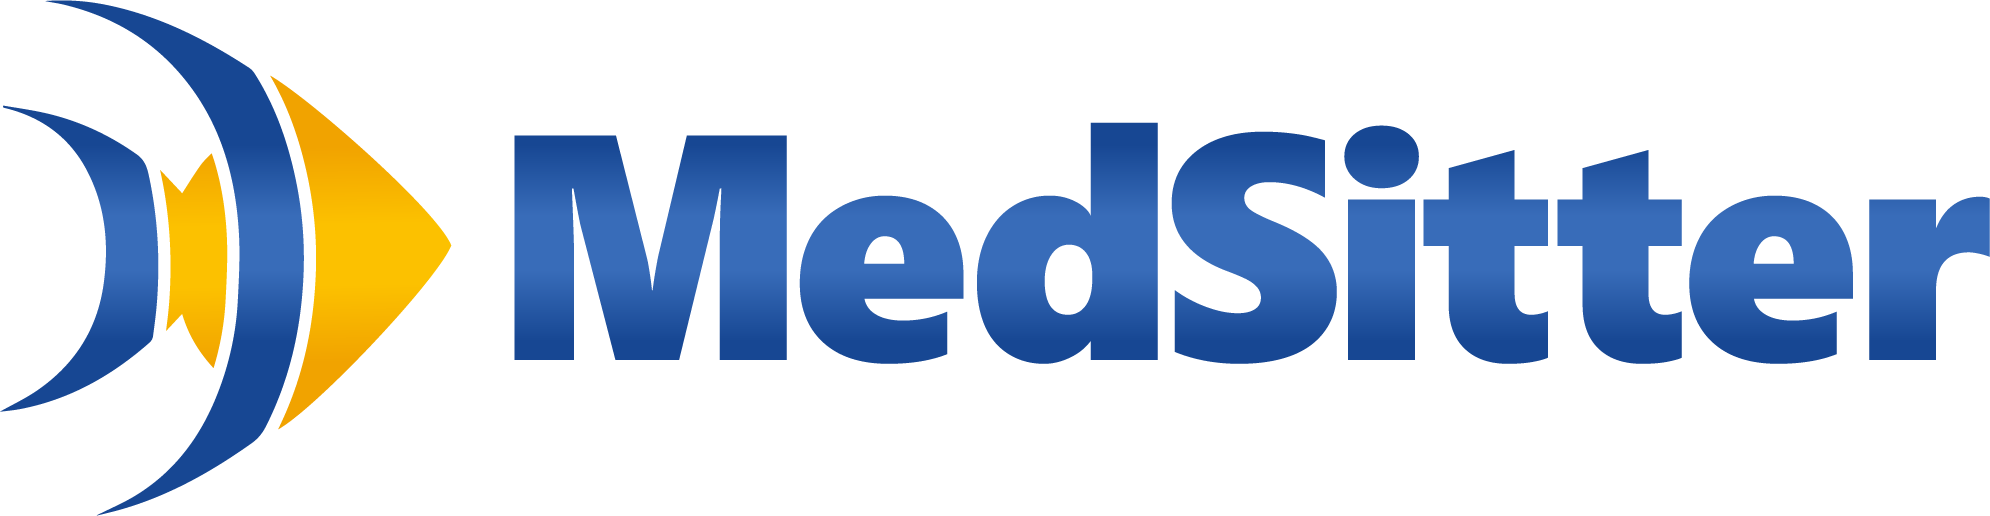 MedSitter Logo